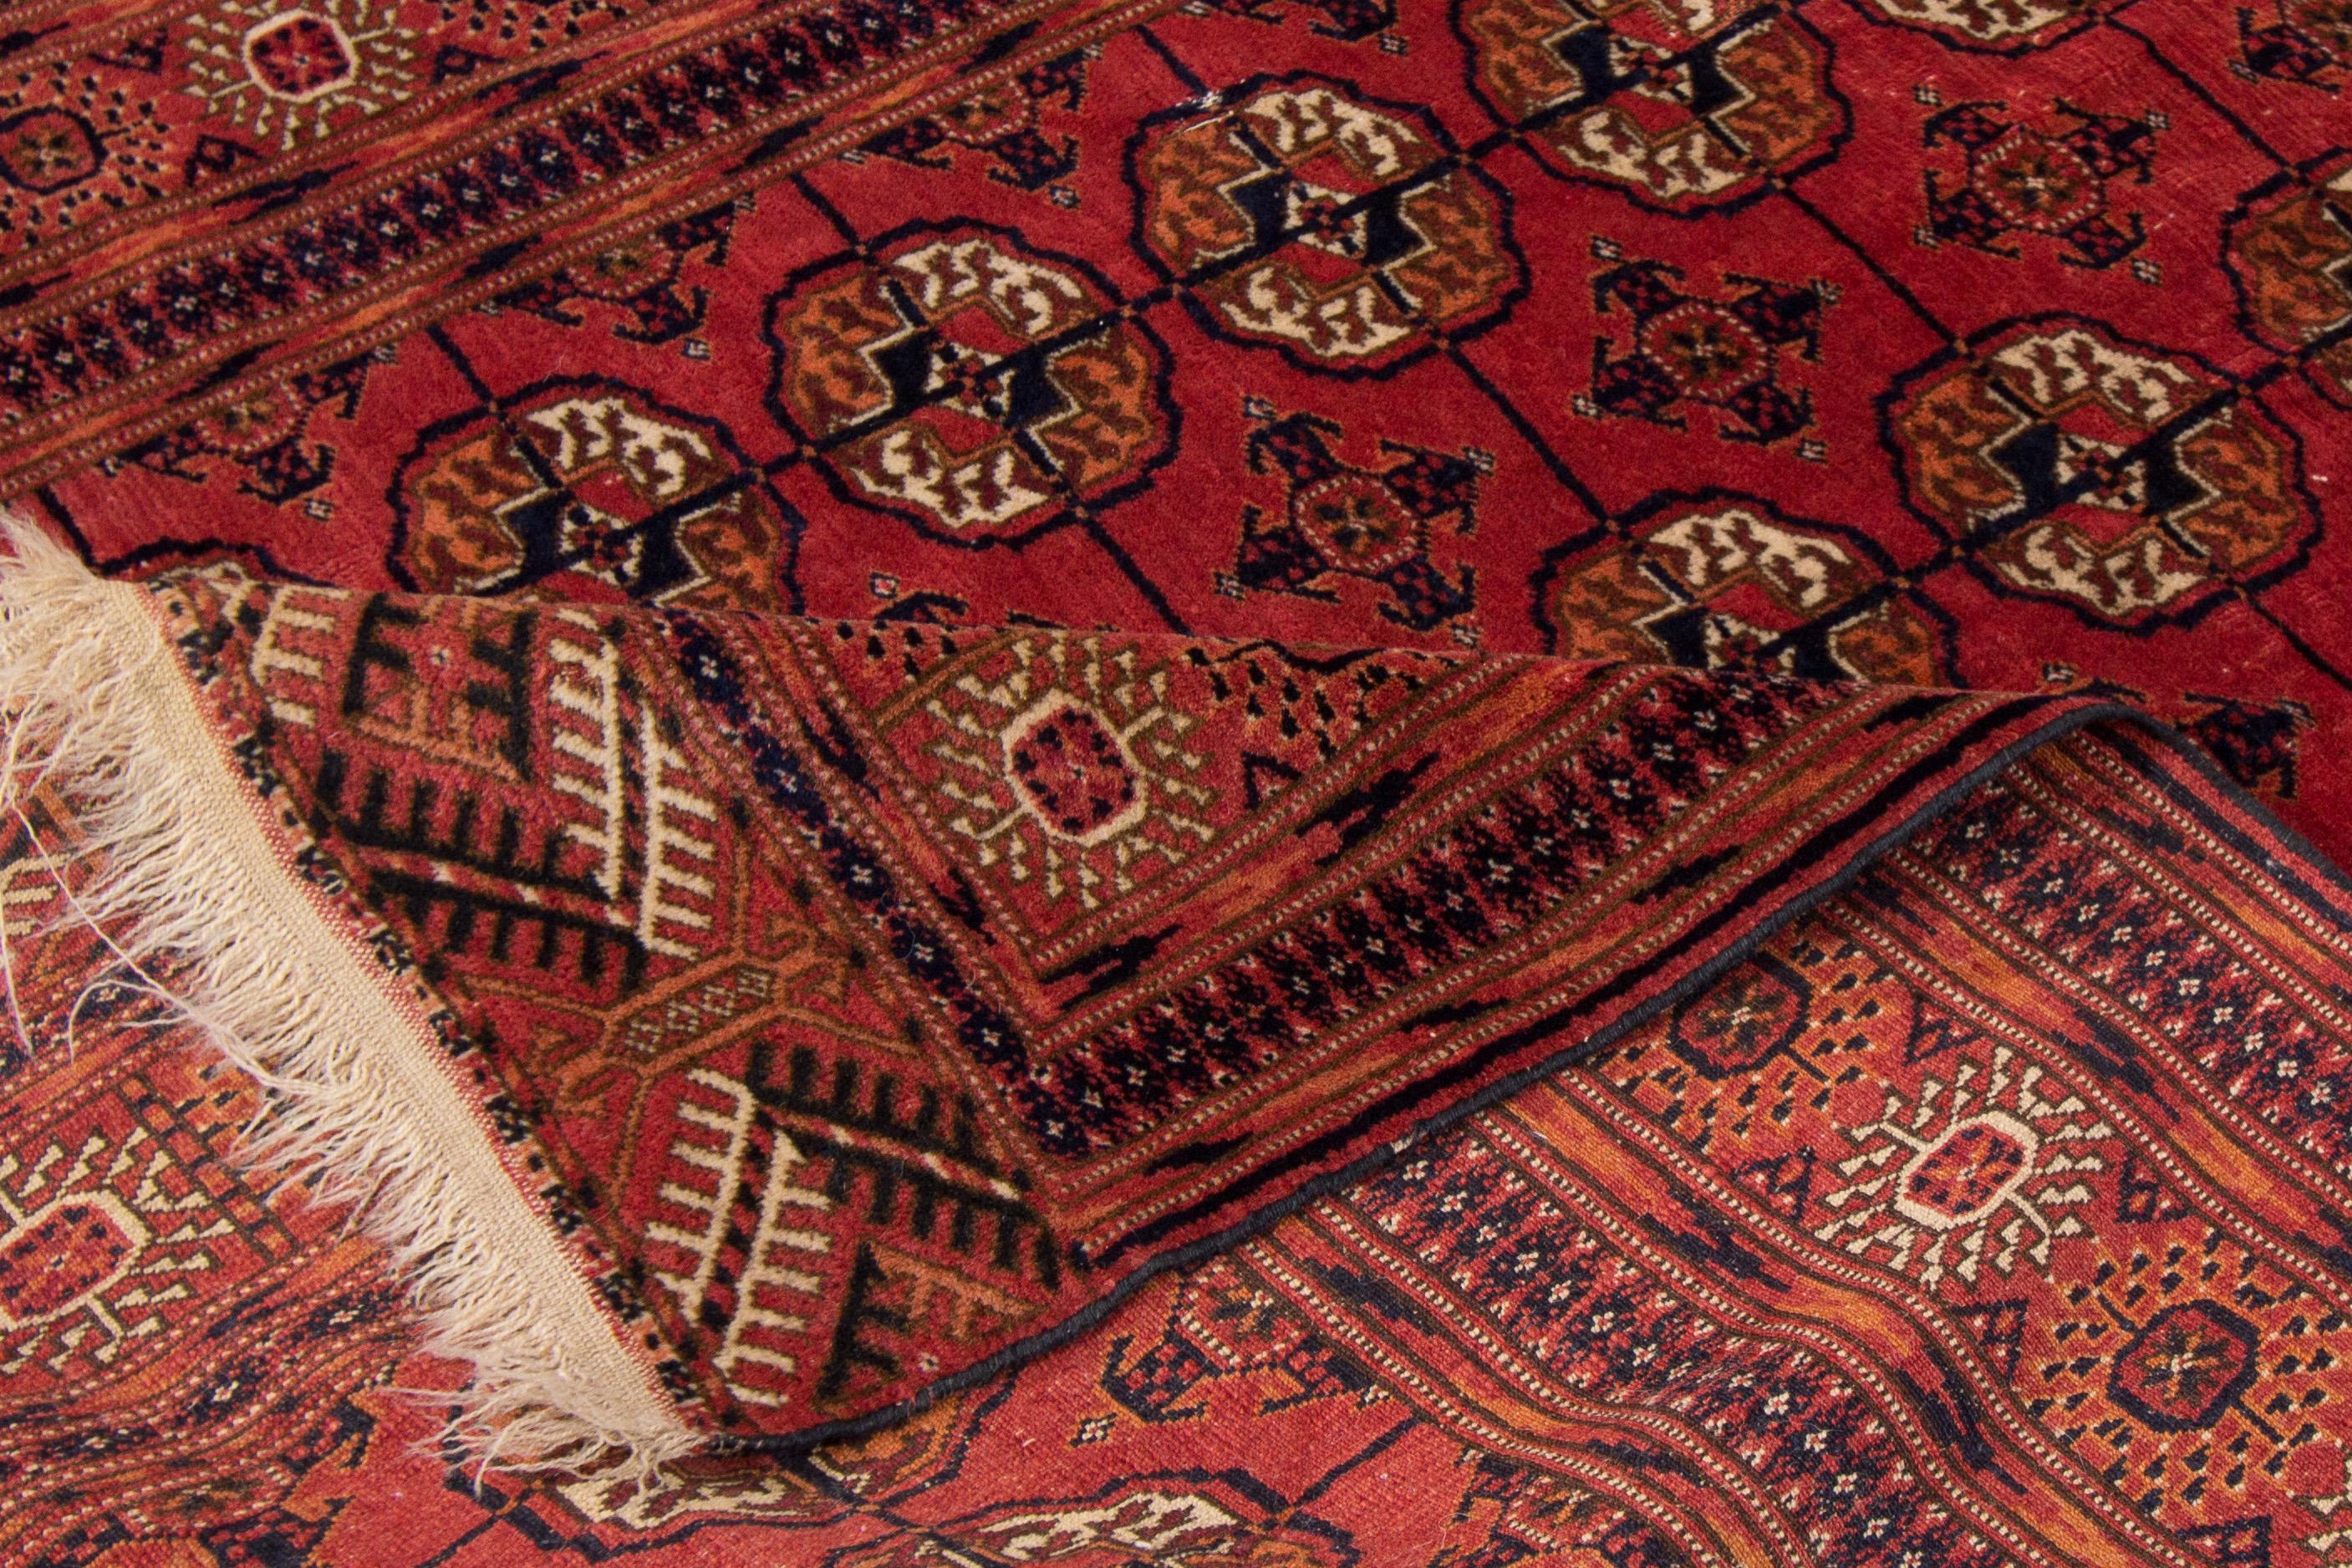 Magnifique tapis vintage turkmène en laine nouée à la main avec un champ rouge. Ce tapis persan présente des accents ivoire et bleu dans un magnifique motif géométrique.

Ce tapis mesure : 4'1